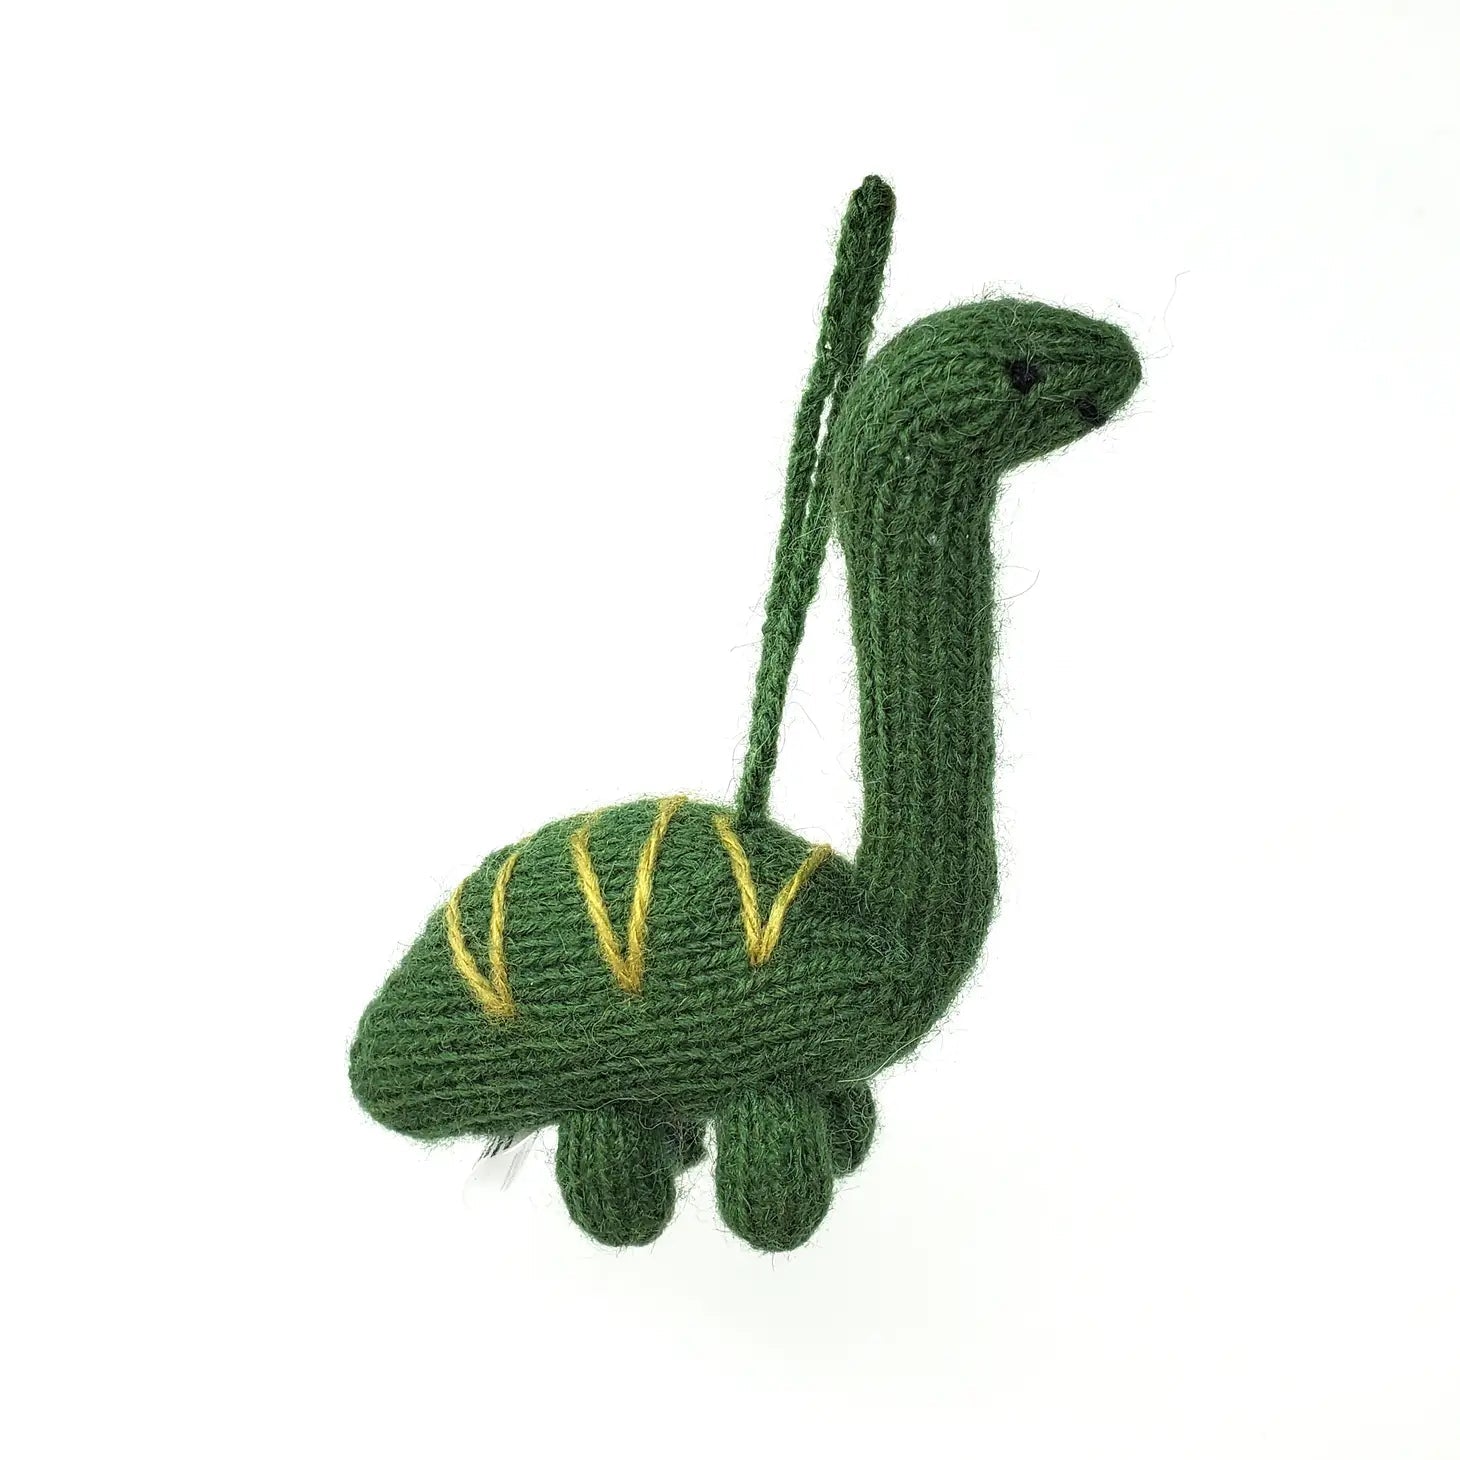 Dinosaur Ornaments- Sold Individually